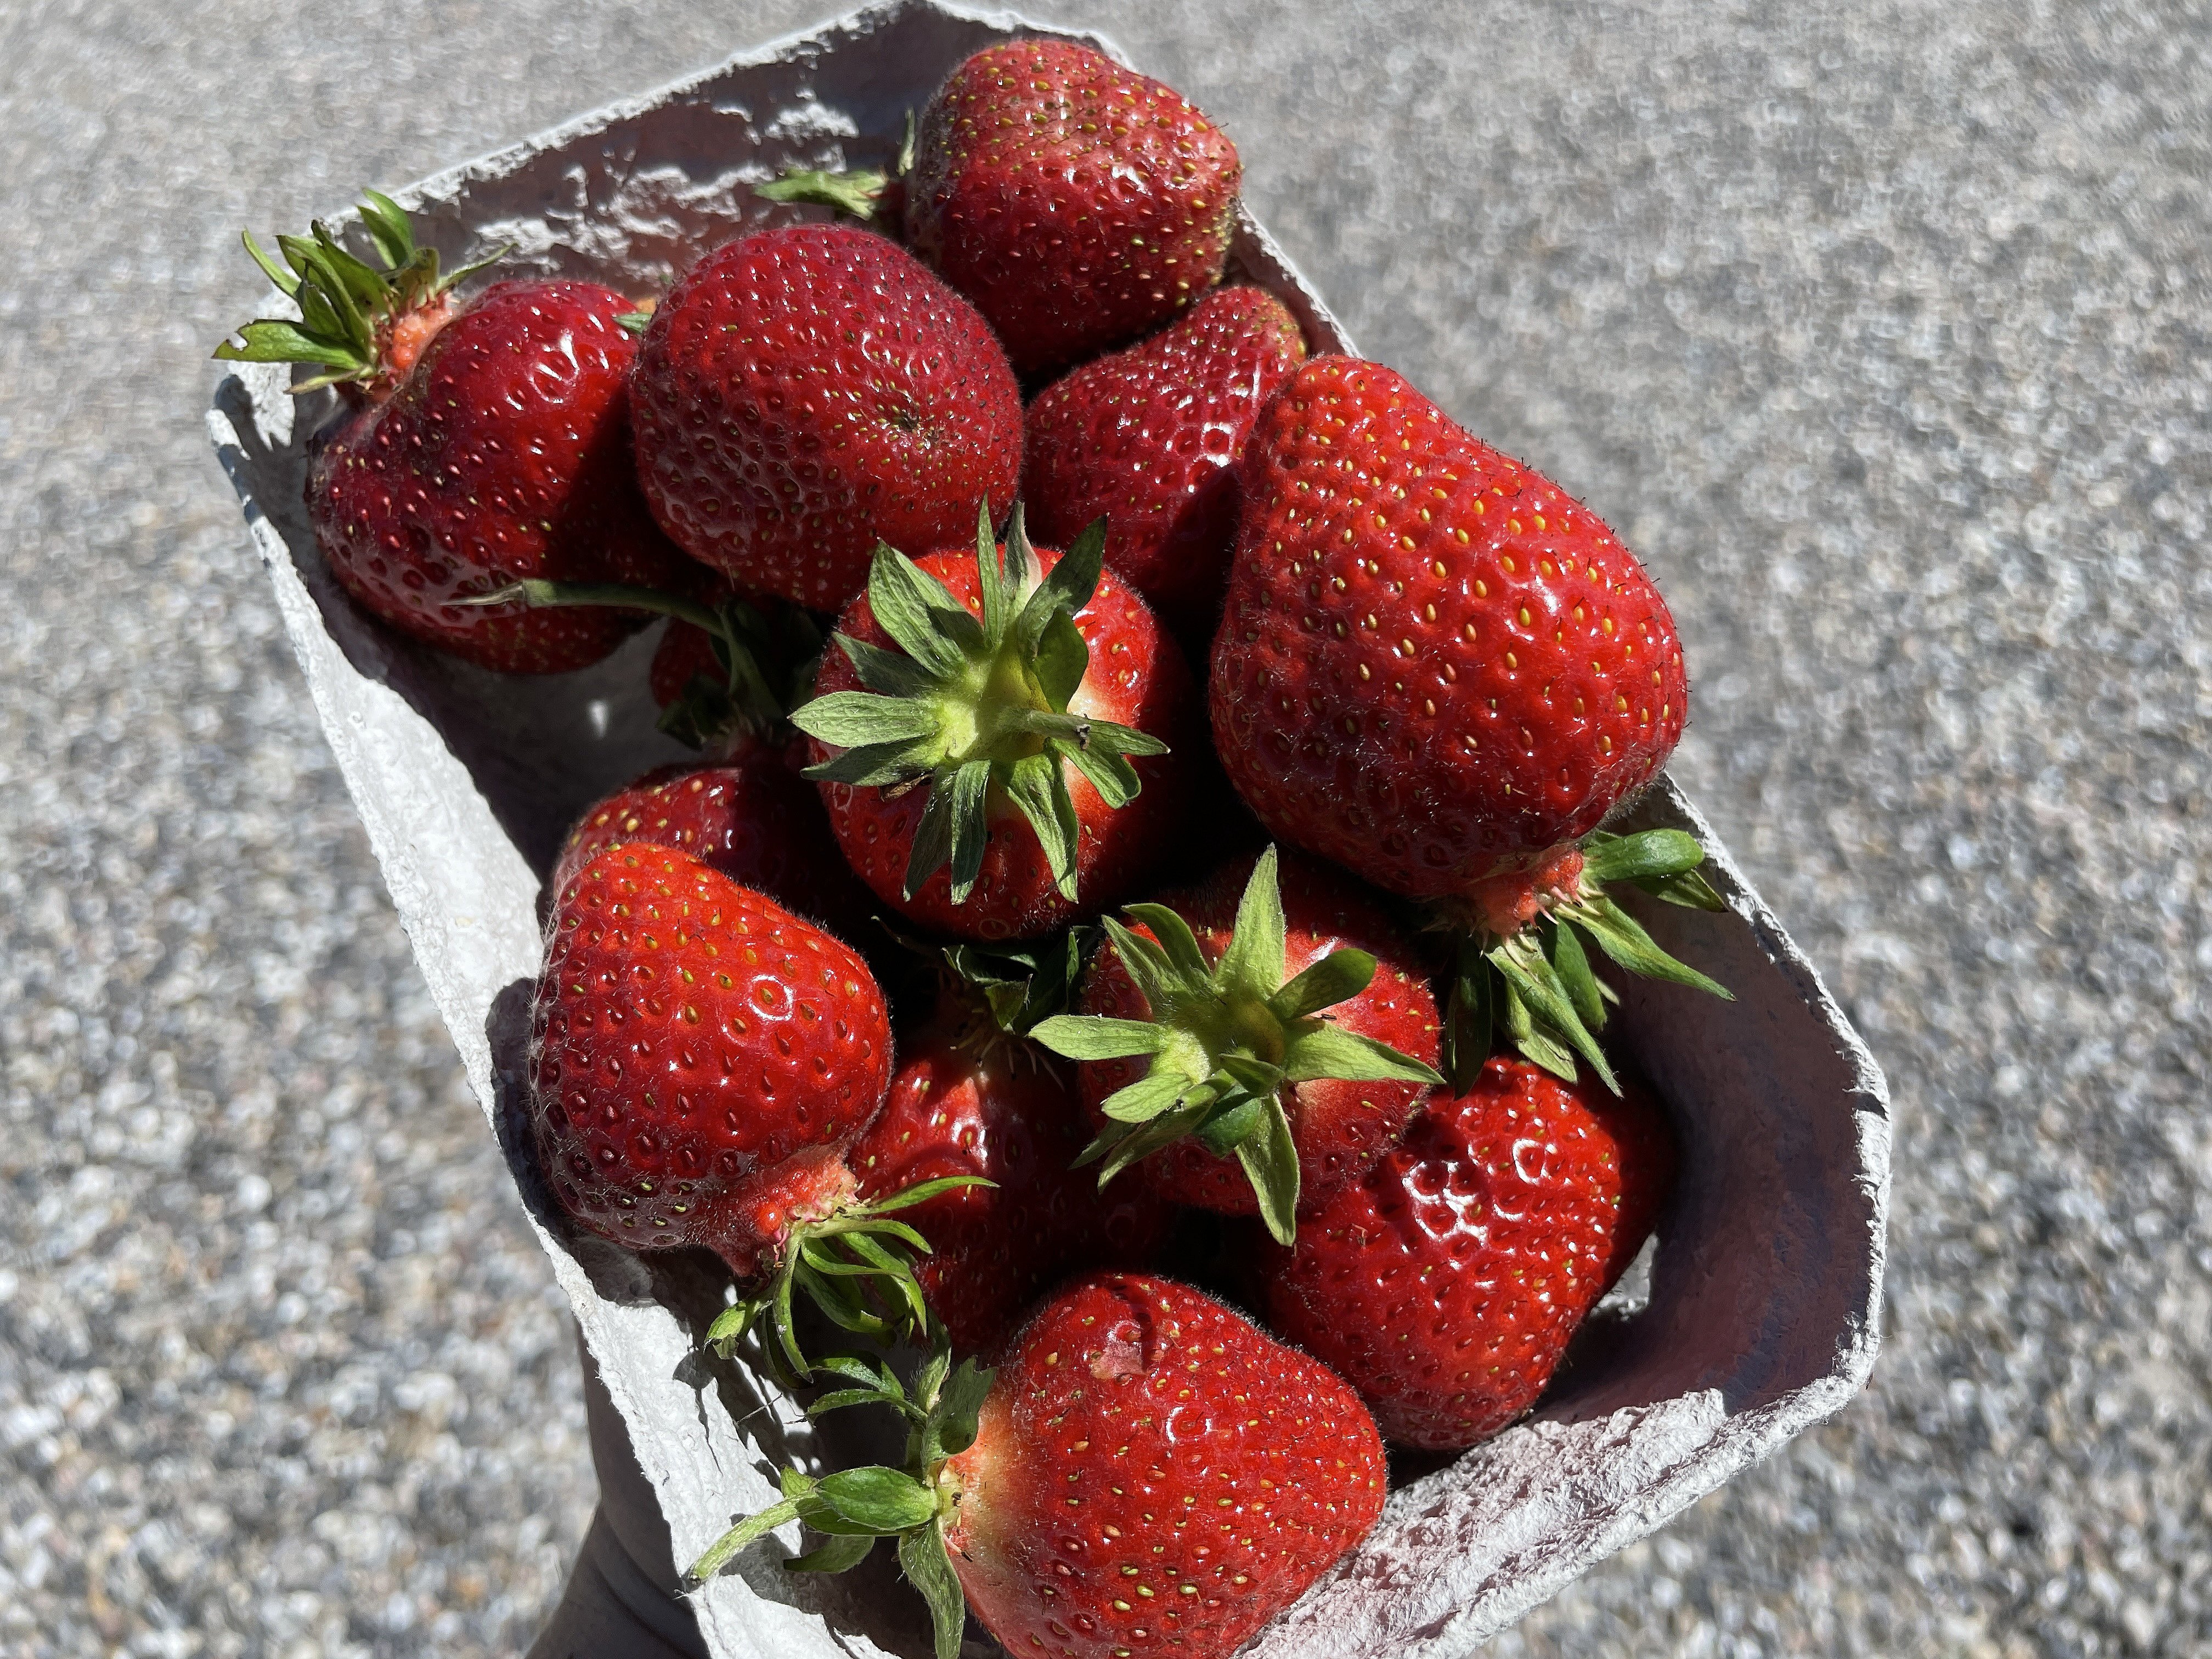 kritiserer jordbærproducent løndumping: - Det kan ikke leve af | TV2 Nord